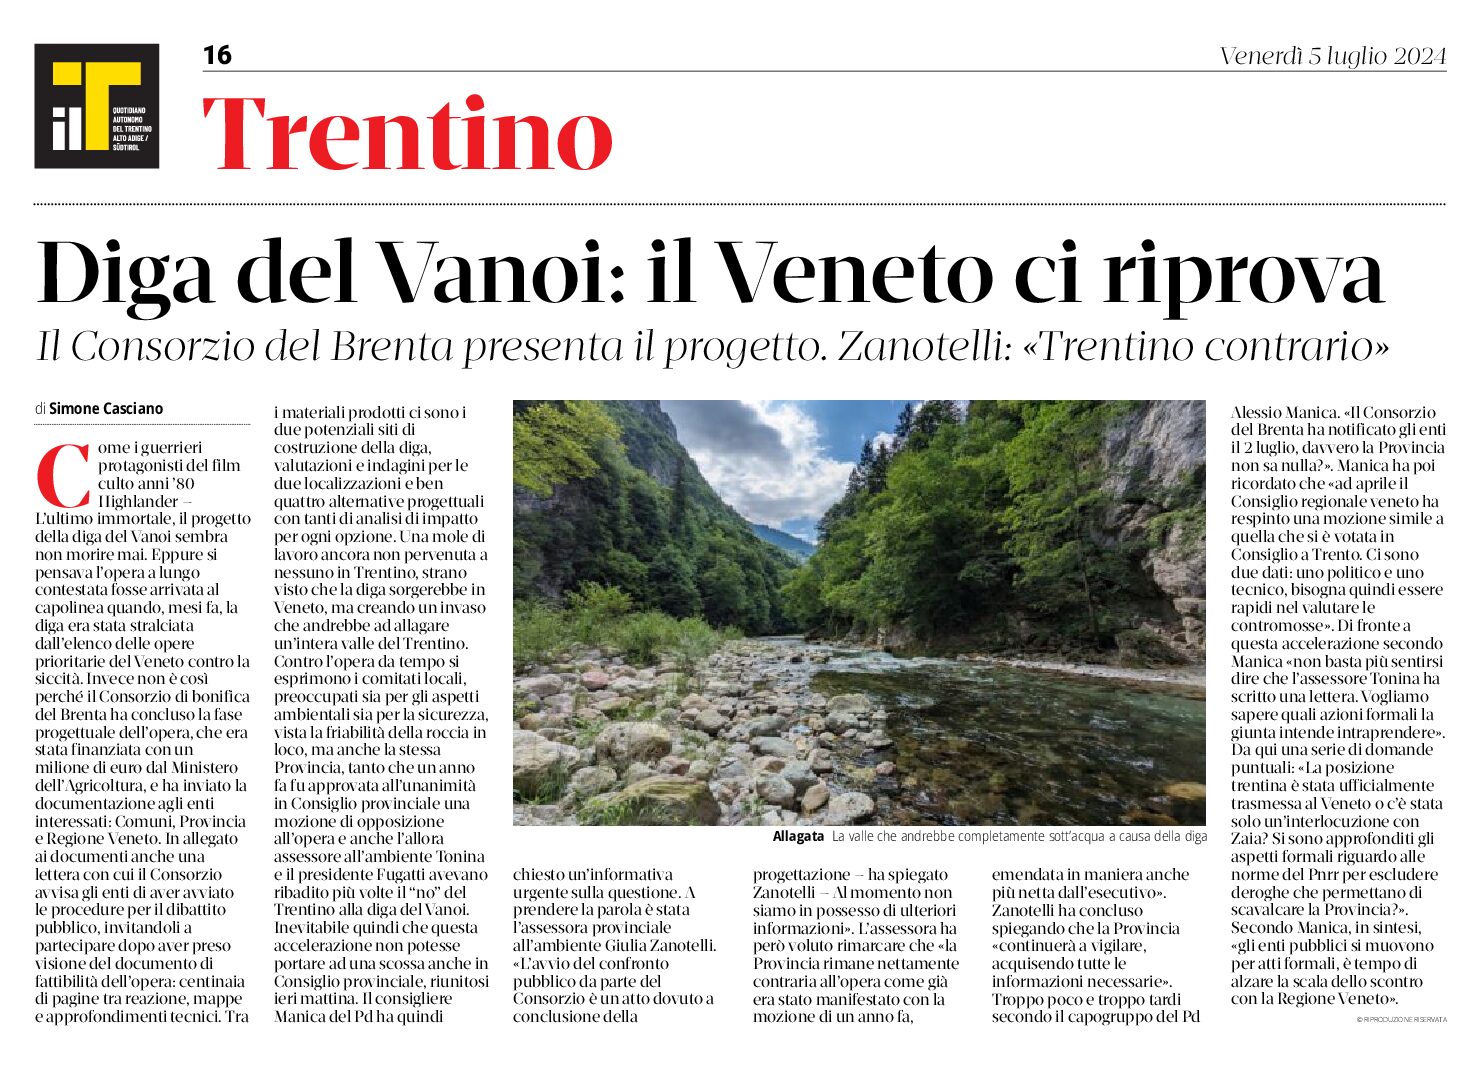 Diga del Vanoi: il Veneto ci riprova. Zanotelli “Trentino contrario”